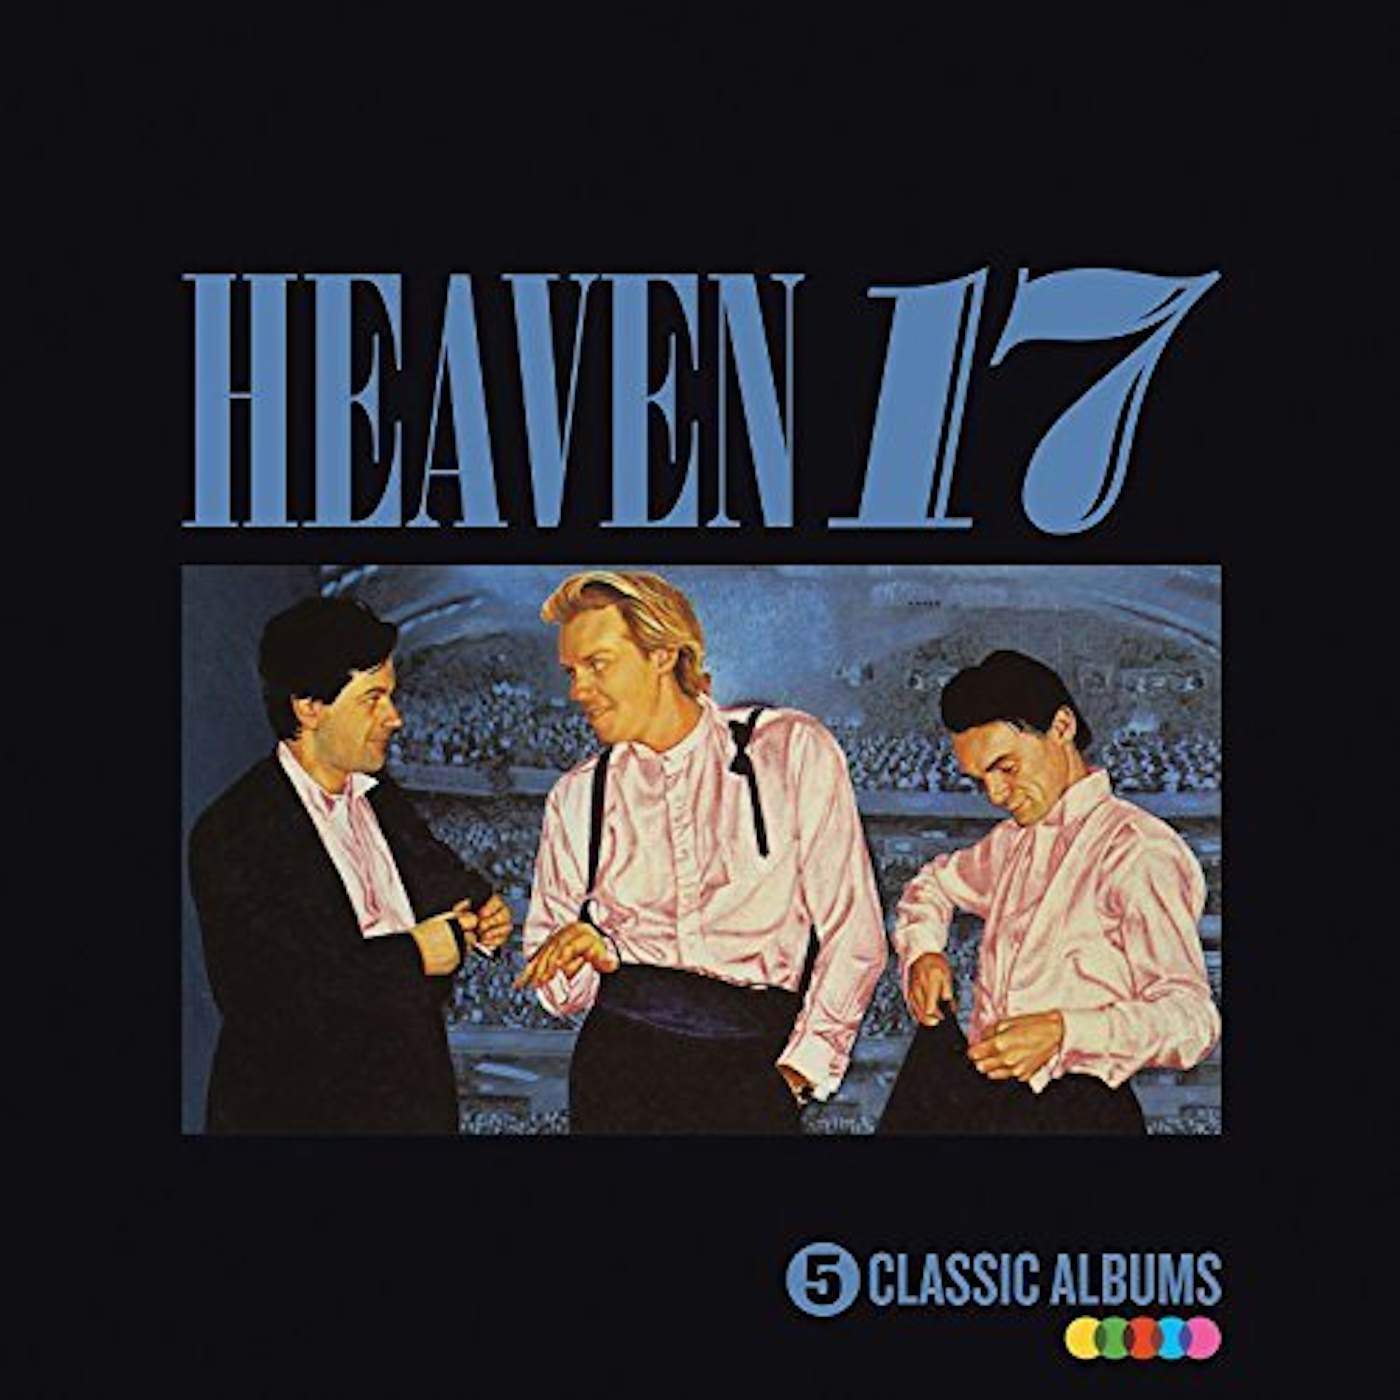 Heaven 17 5 CLASSIC ALBUMS CD